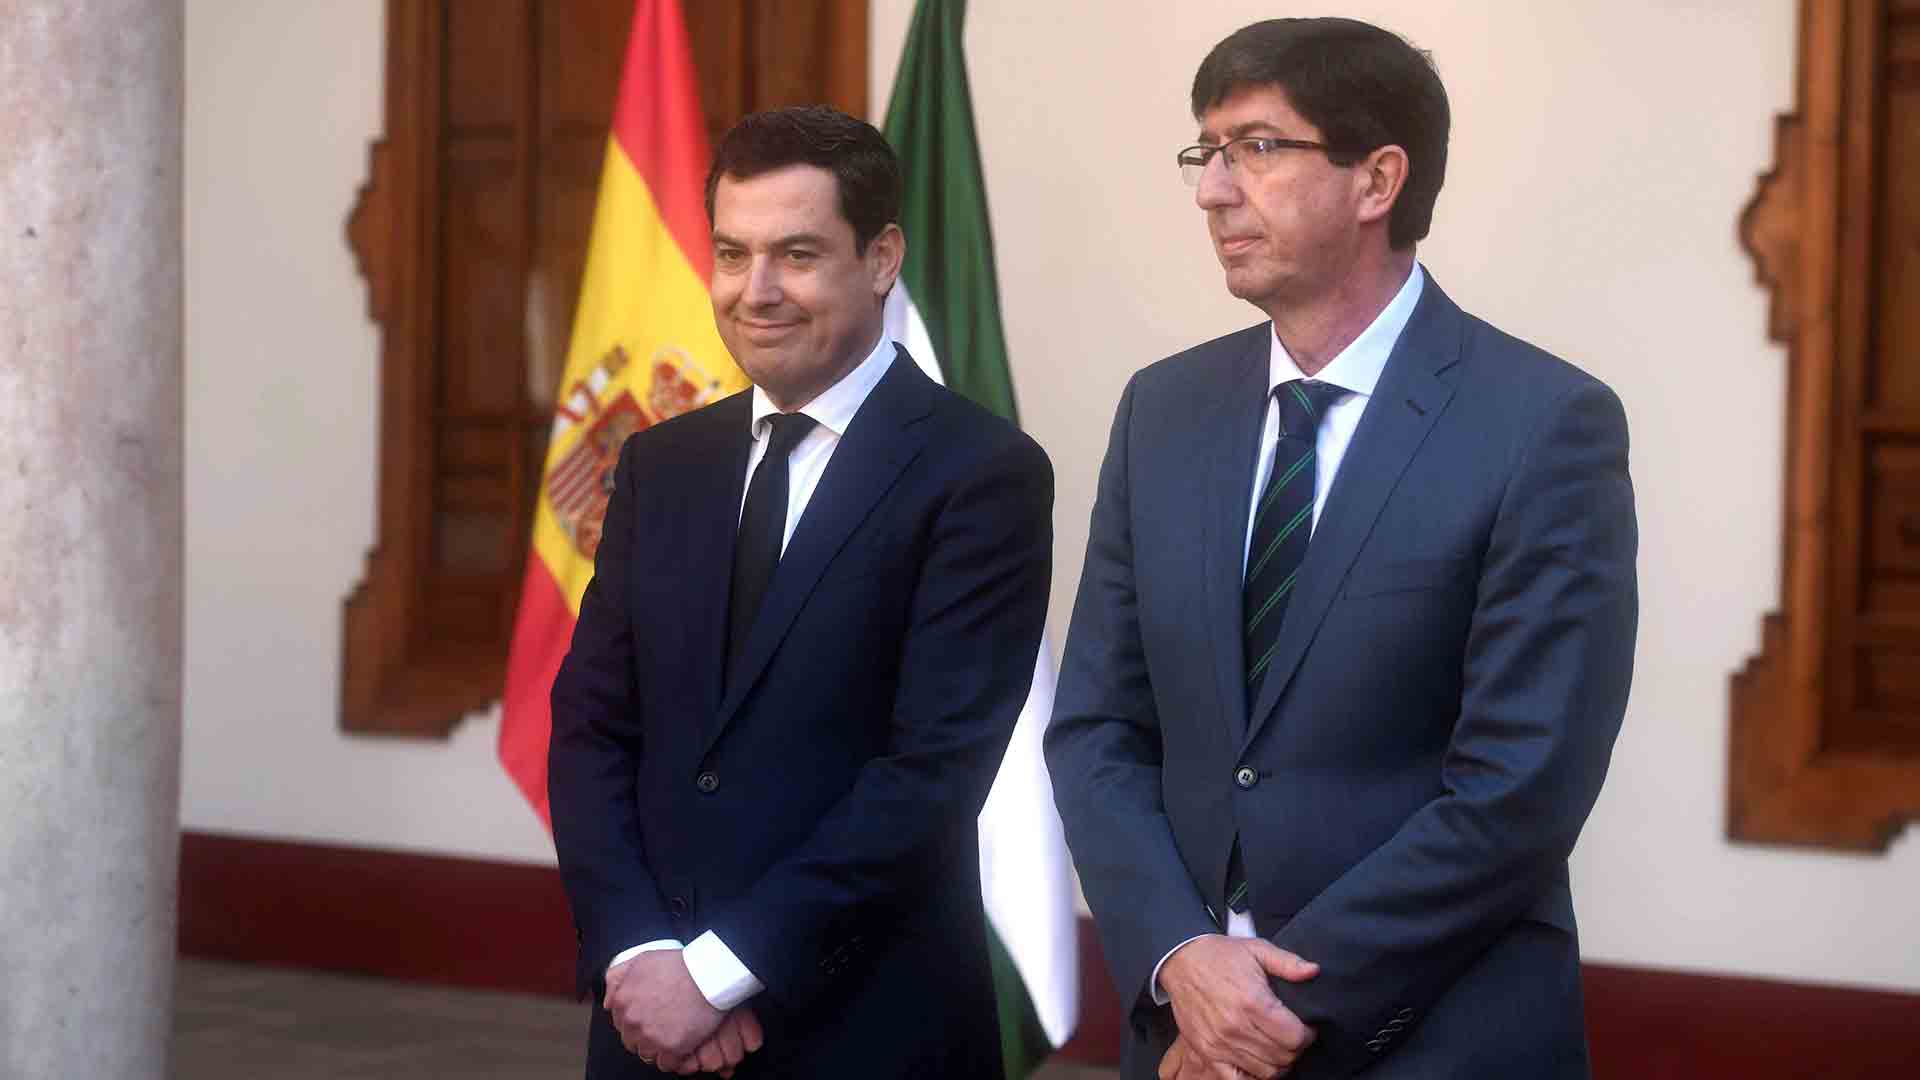 El Gobierno andaluz reivindica en Antequera la autonomía y la soberanía nacional